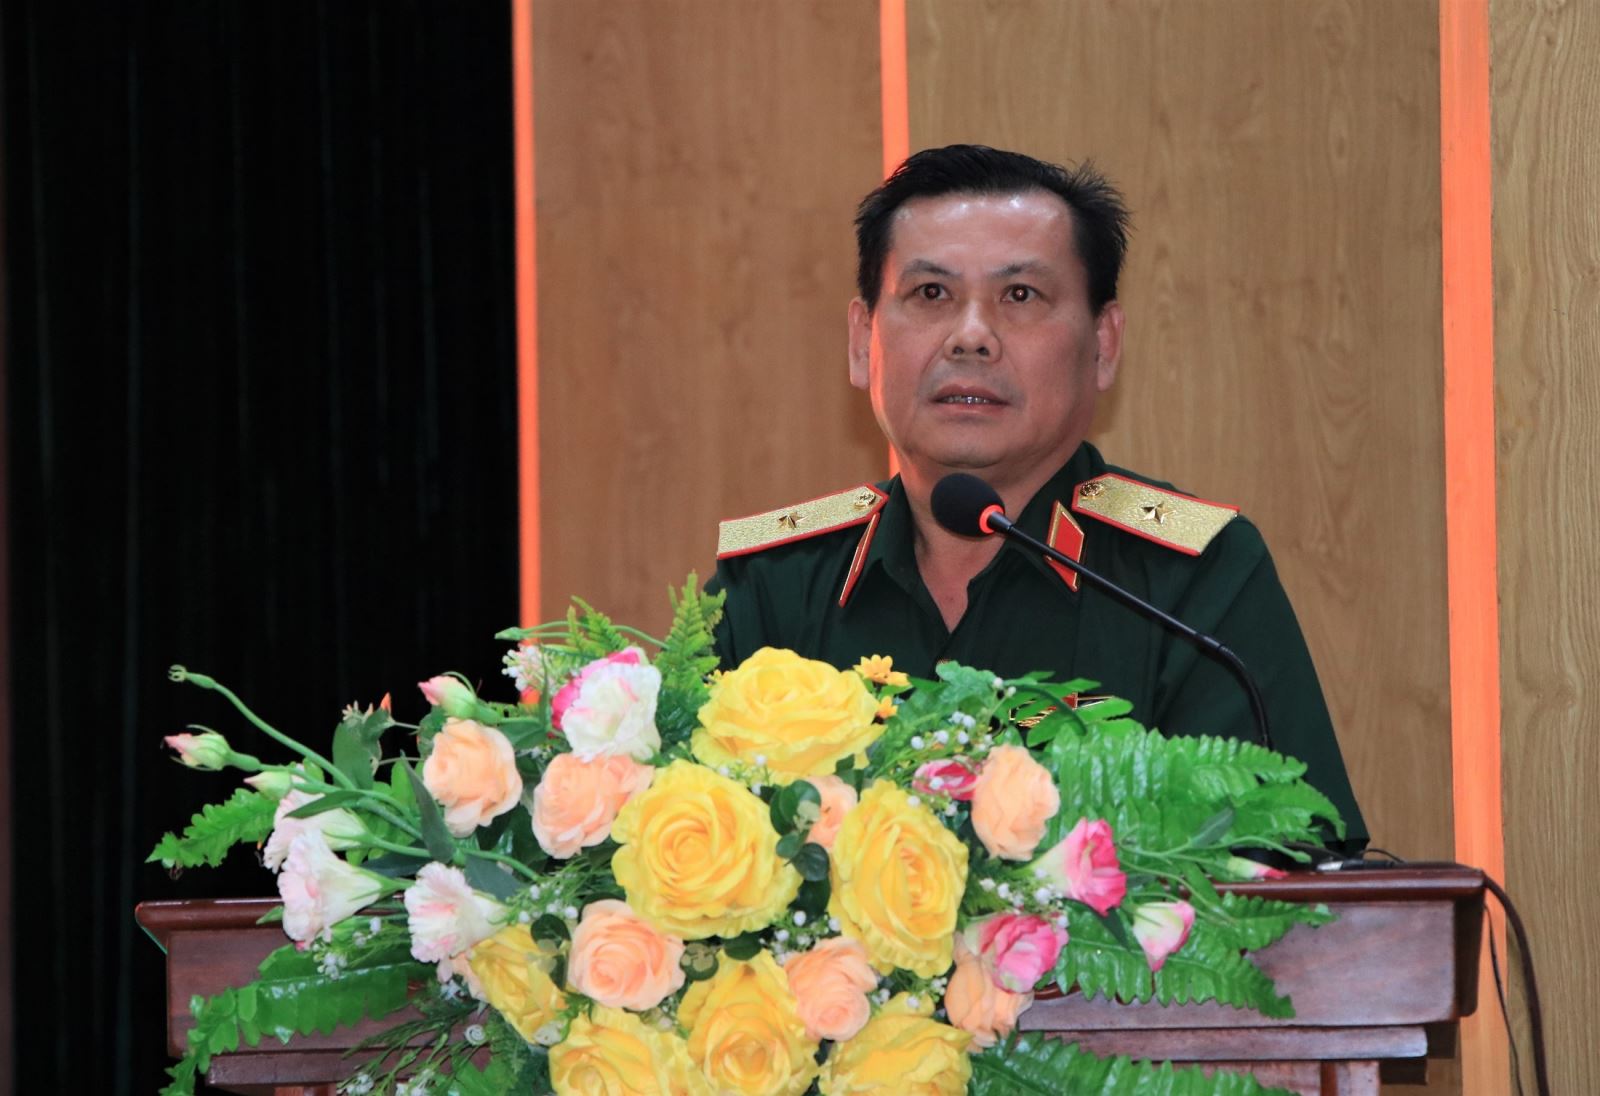 Thiếu tướng Đặng Văn Lẫm, Phó Tư lệnh Quân khu 7 muốn góp phần giữ vững môi trường hòa bình, ổn định để xây dựng và phát triển đất nước